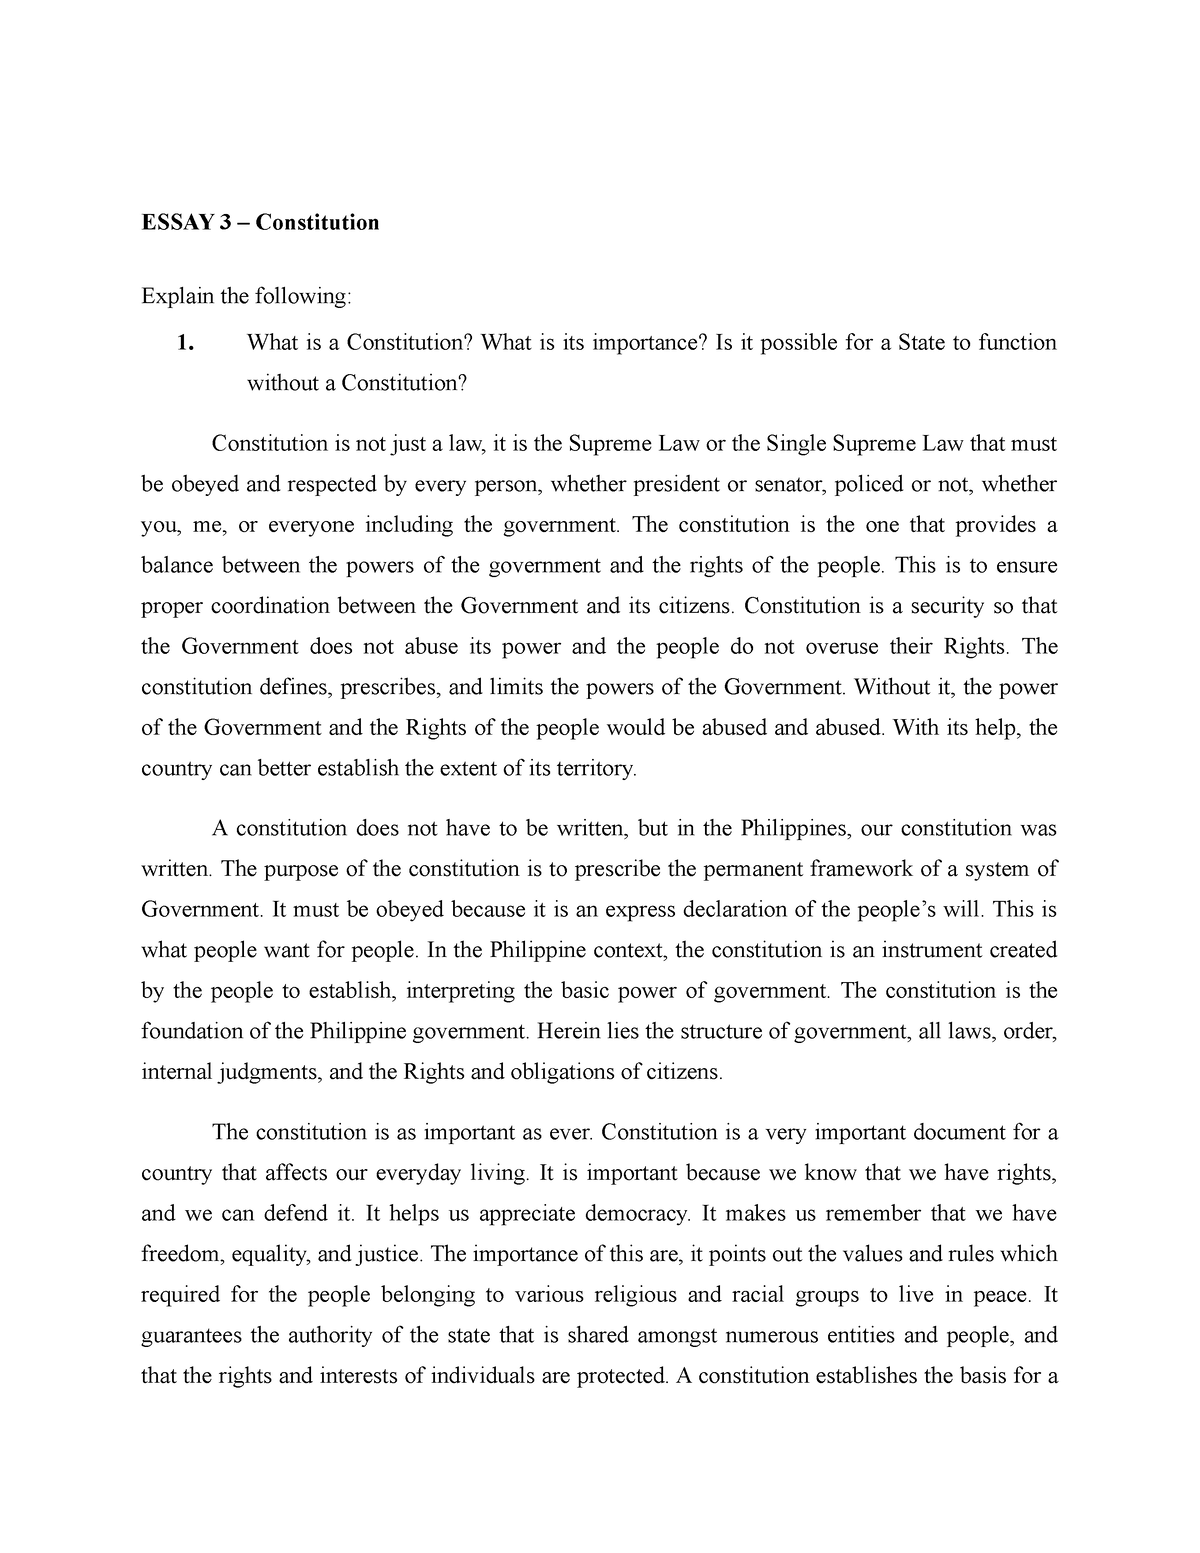 constitution essay conclusion